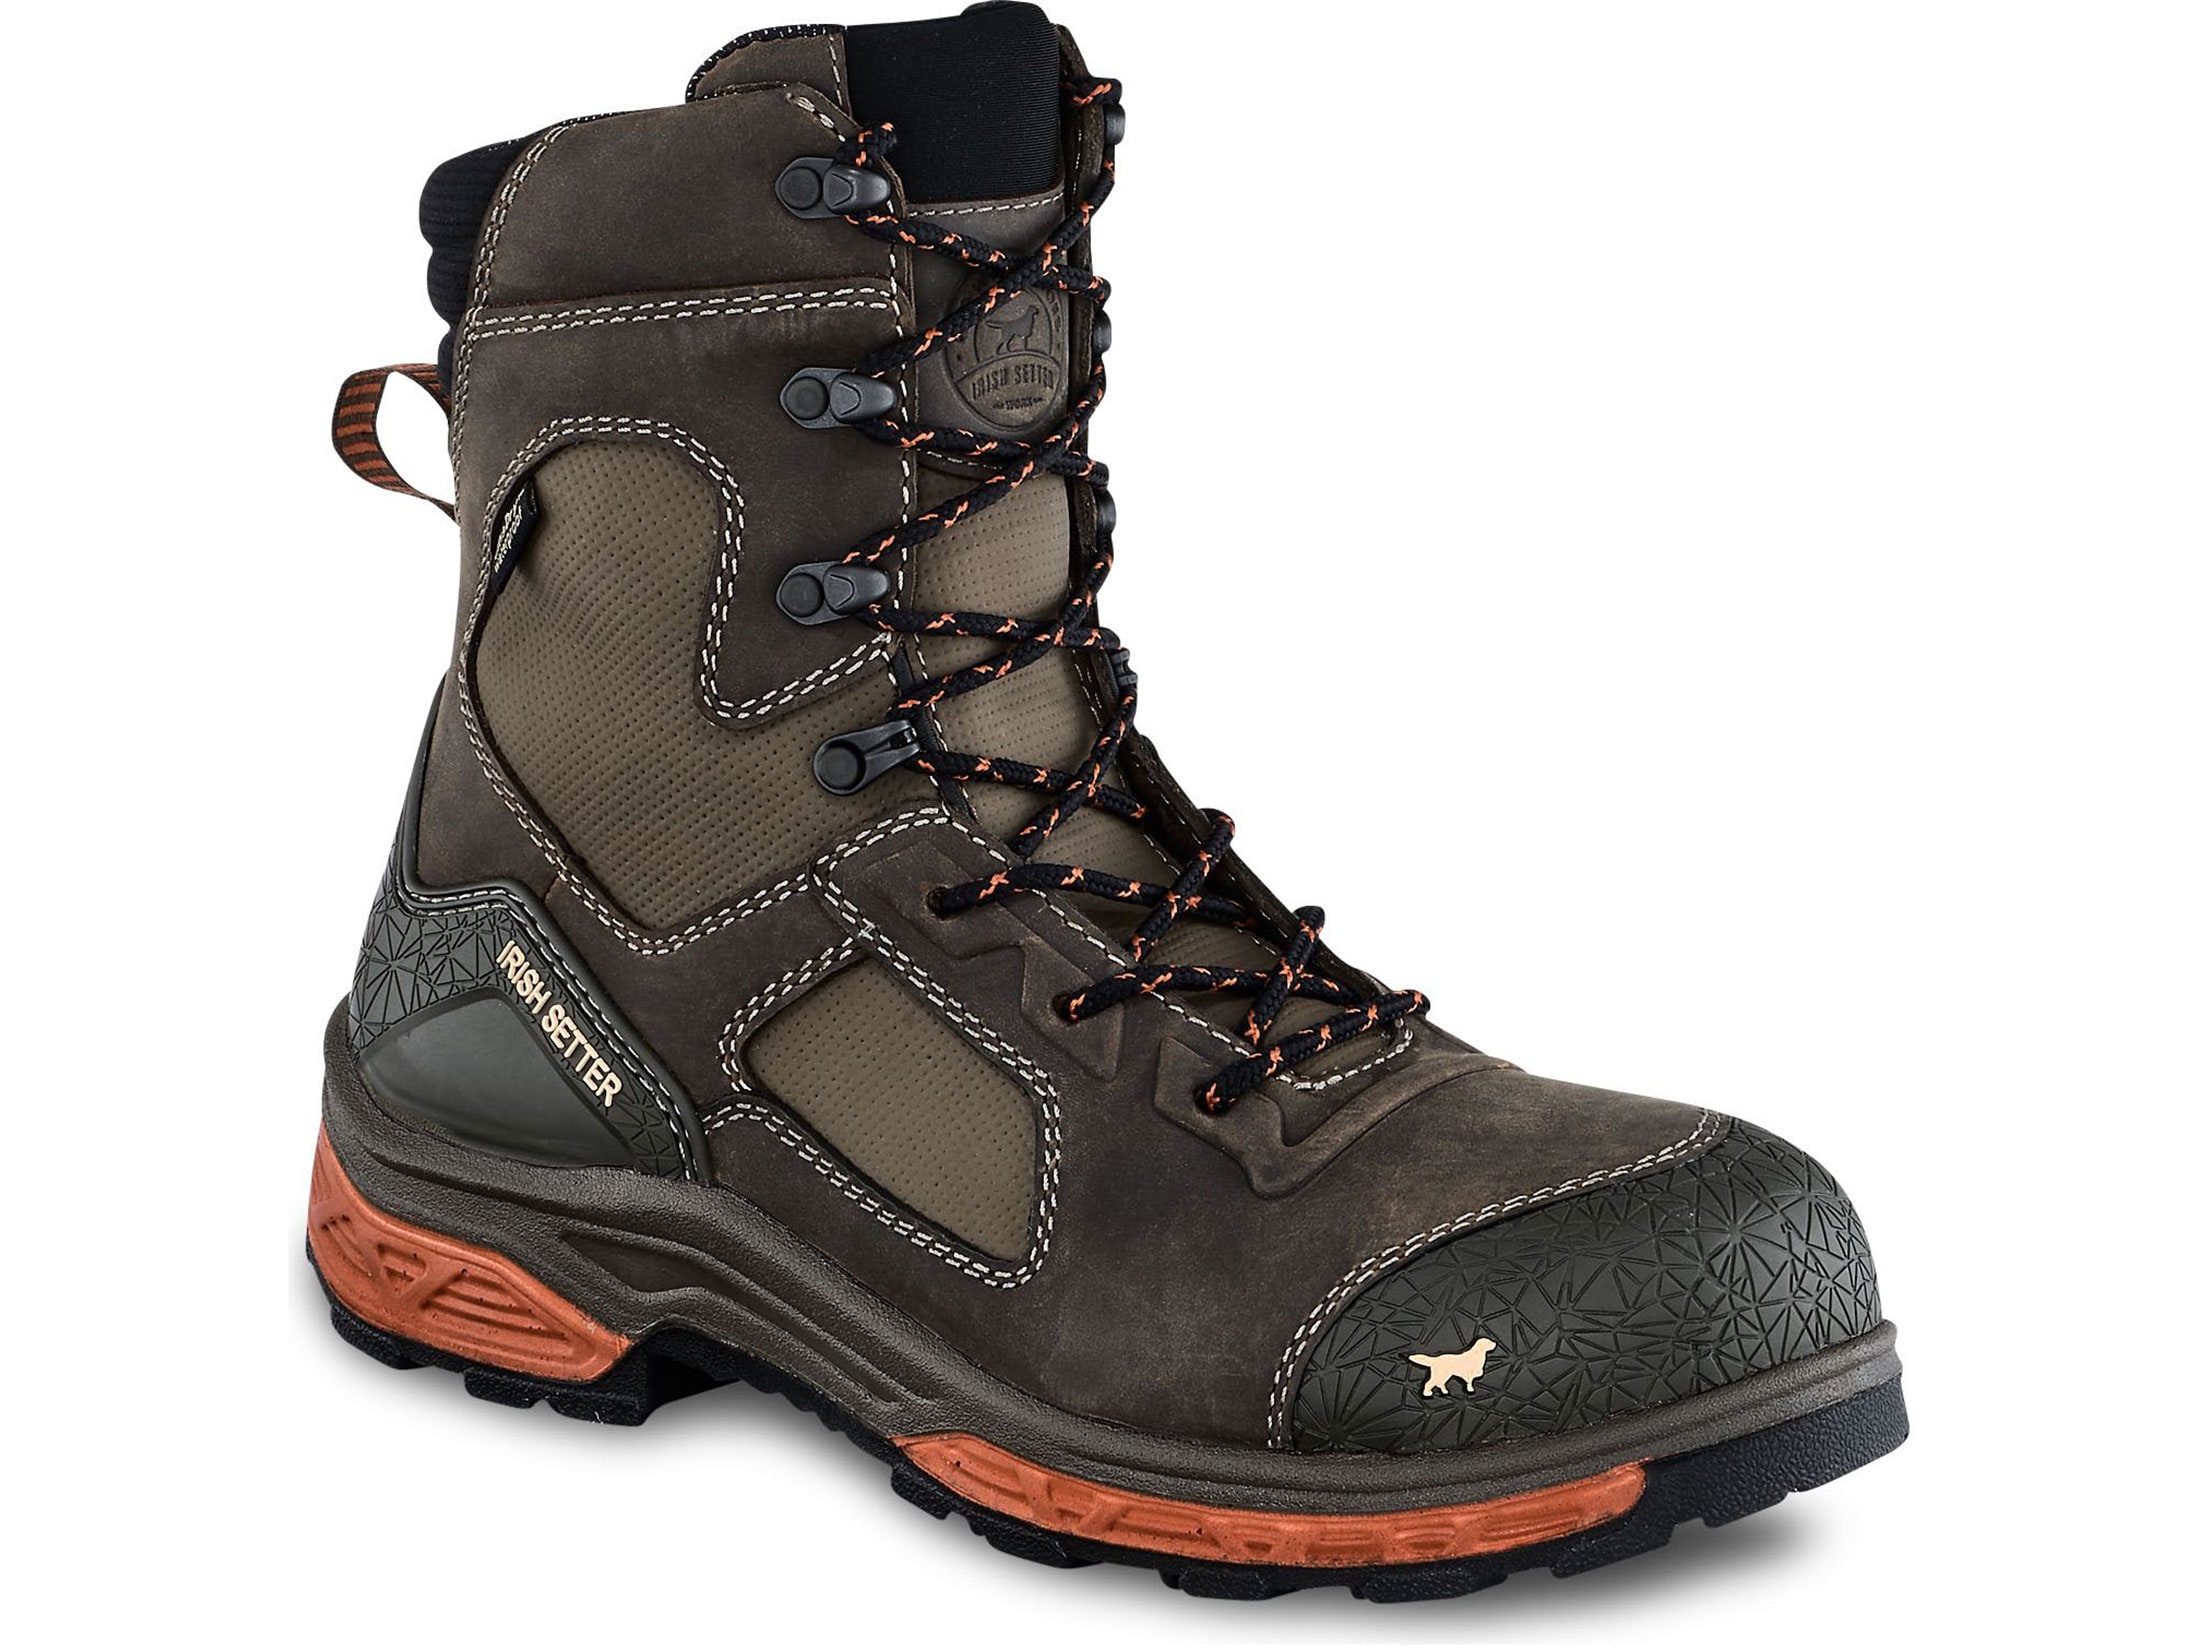 Irish Setter Kasota 8 Non-Metallic Safety Toe Work Boots Leather/Mesh